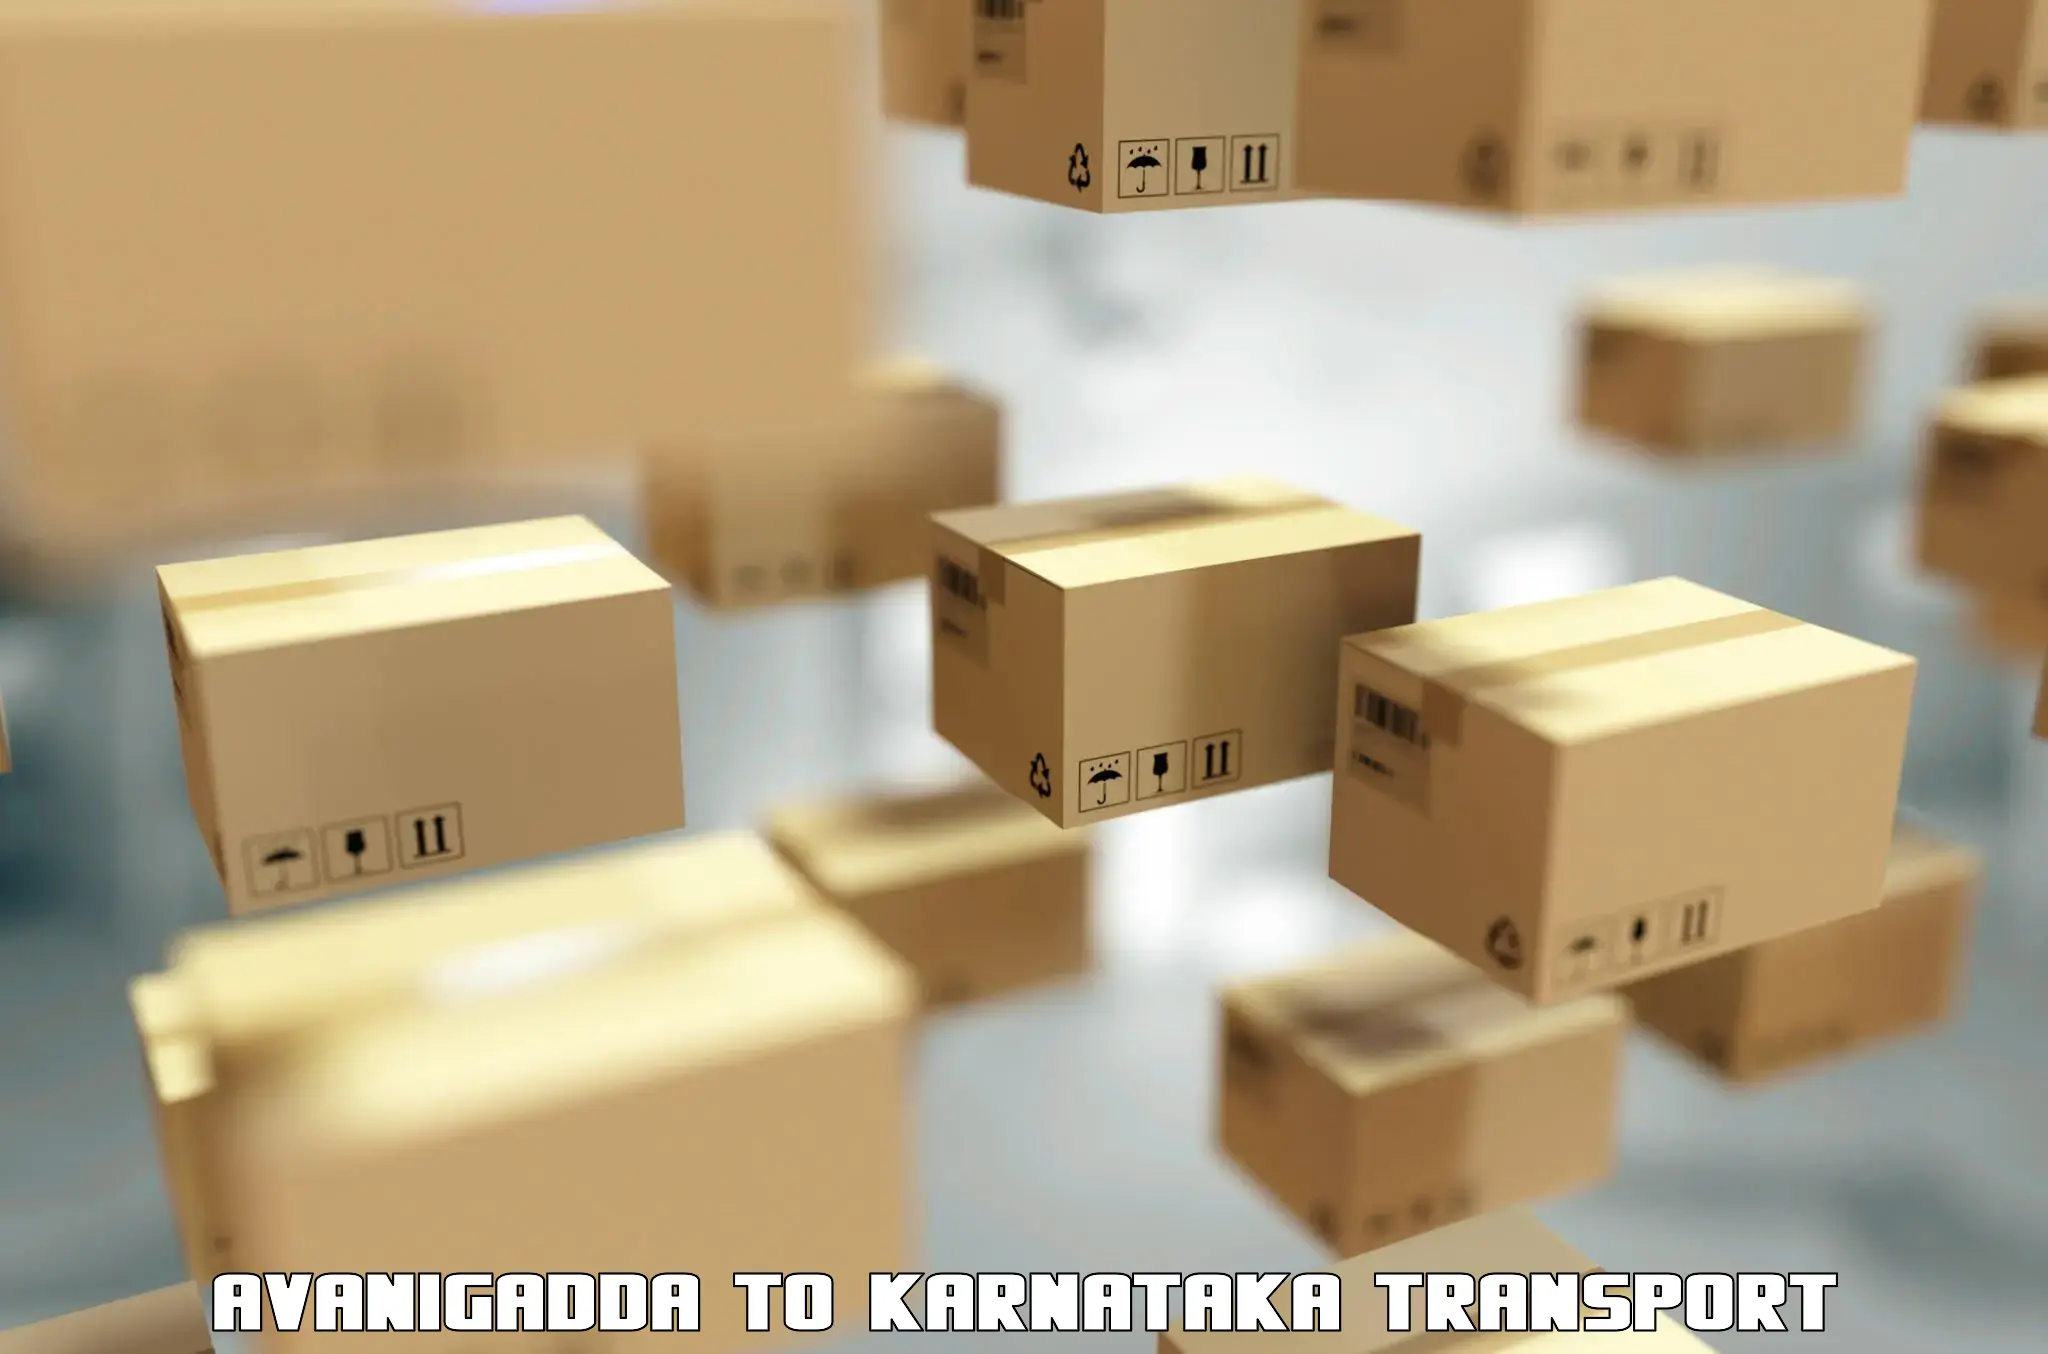 Shipping partner Avanigadda to Karnataka